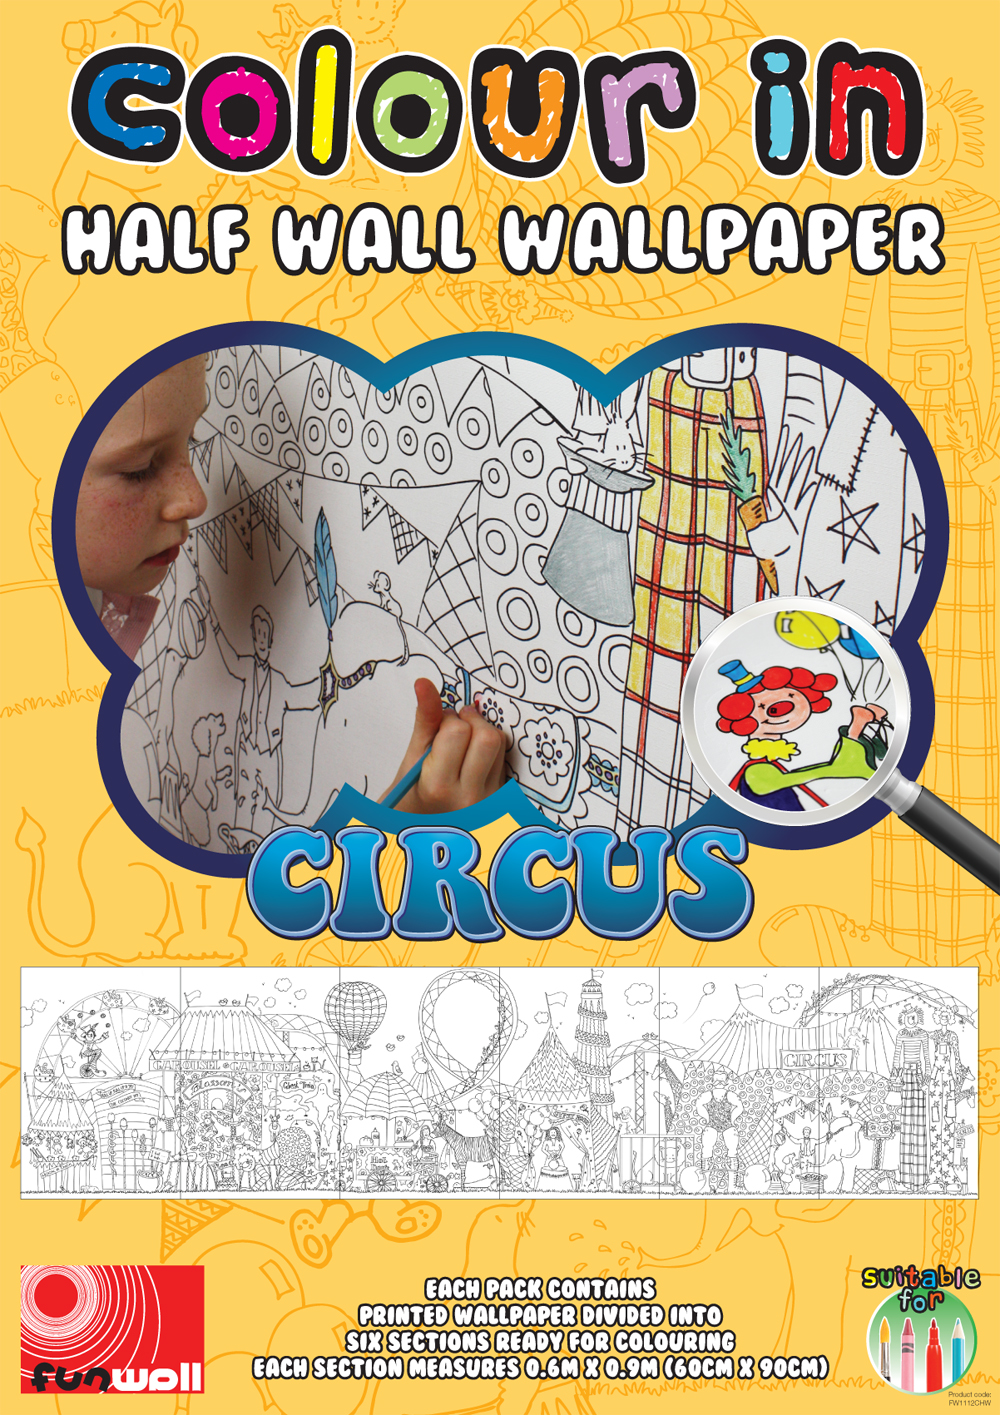 Circus Design Half Wall Wallpaper Funwall